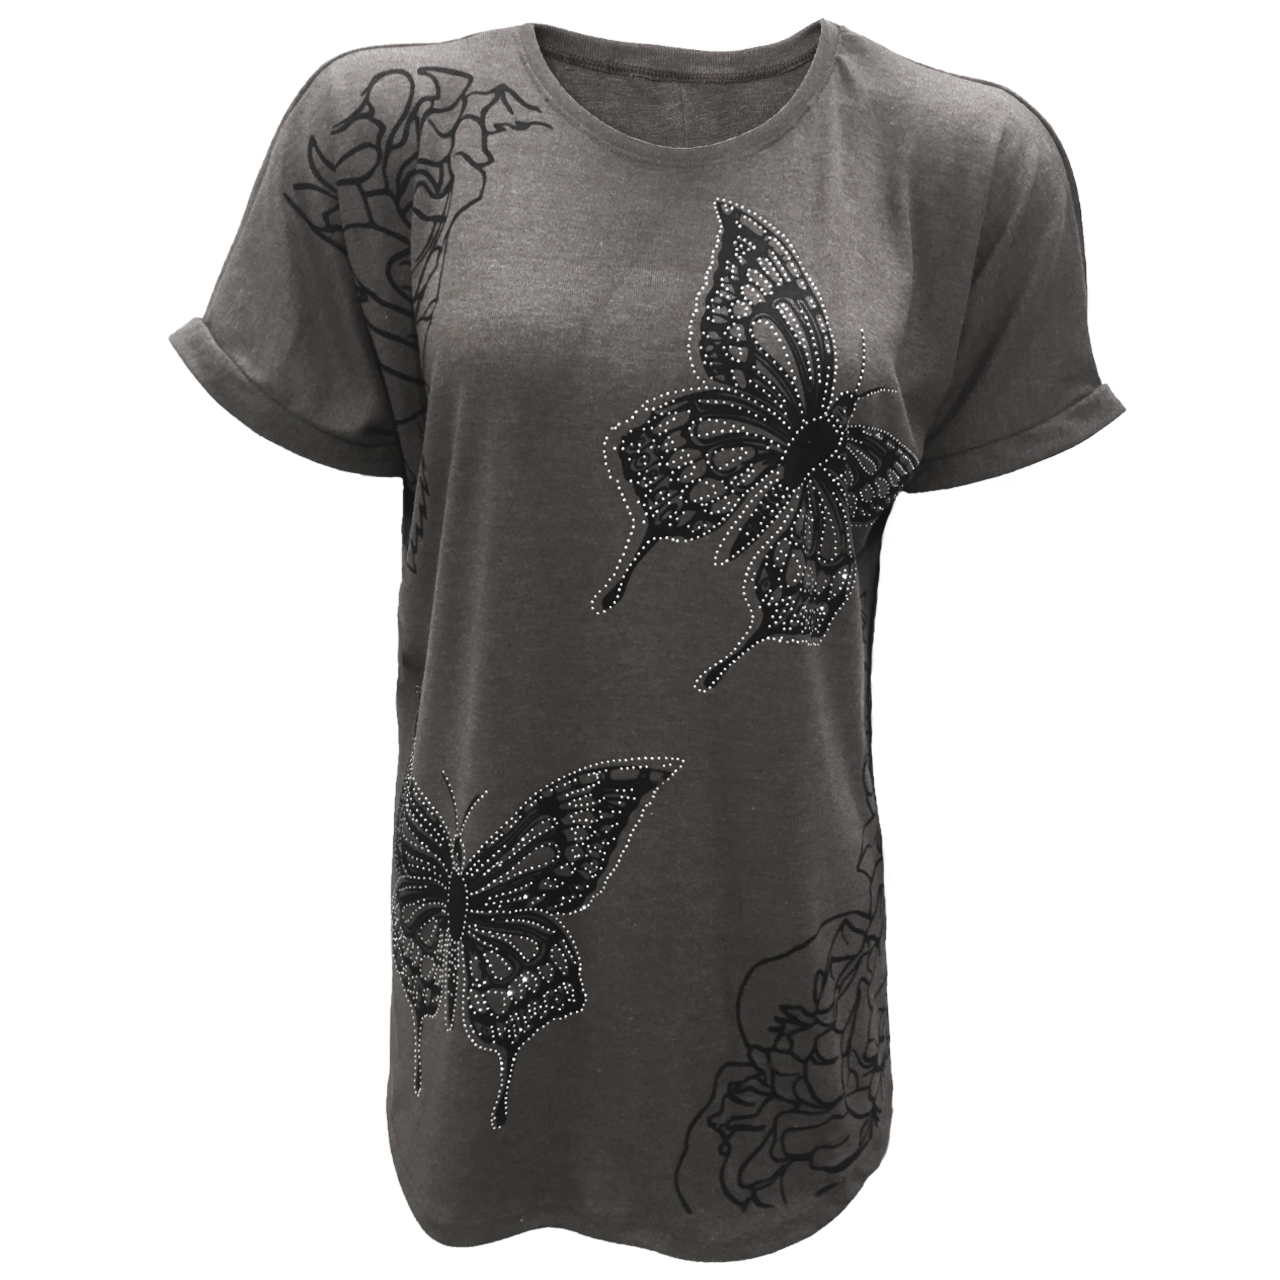 تیشرت آستین کوتاه زنانه طرح پروانه کد tm-1059 رنگ طوسی